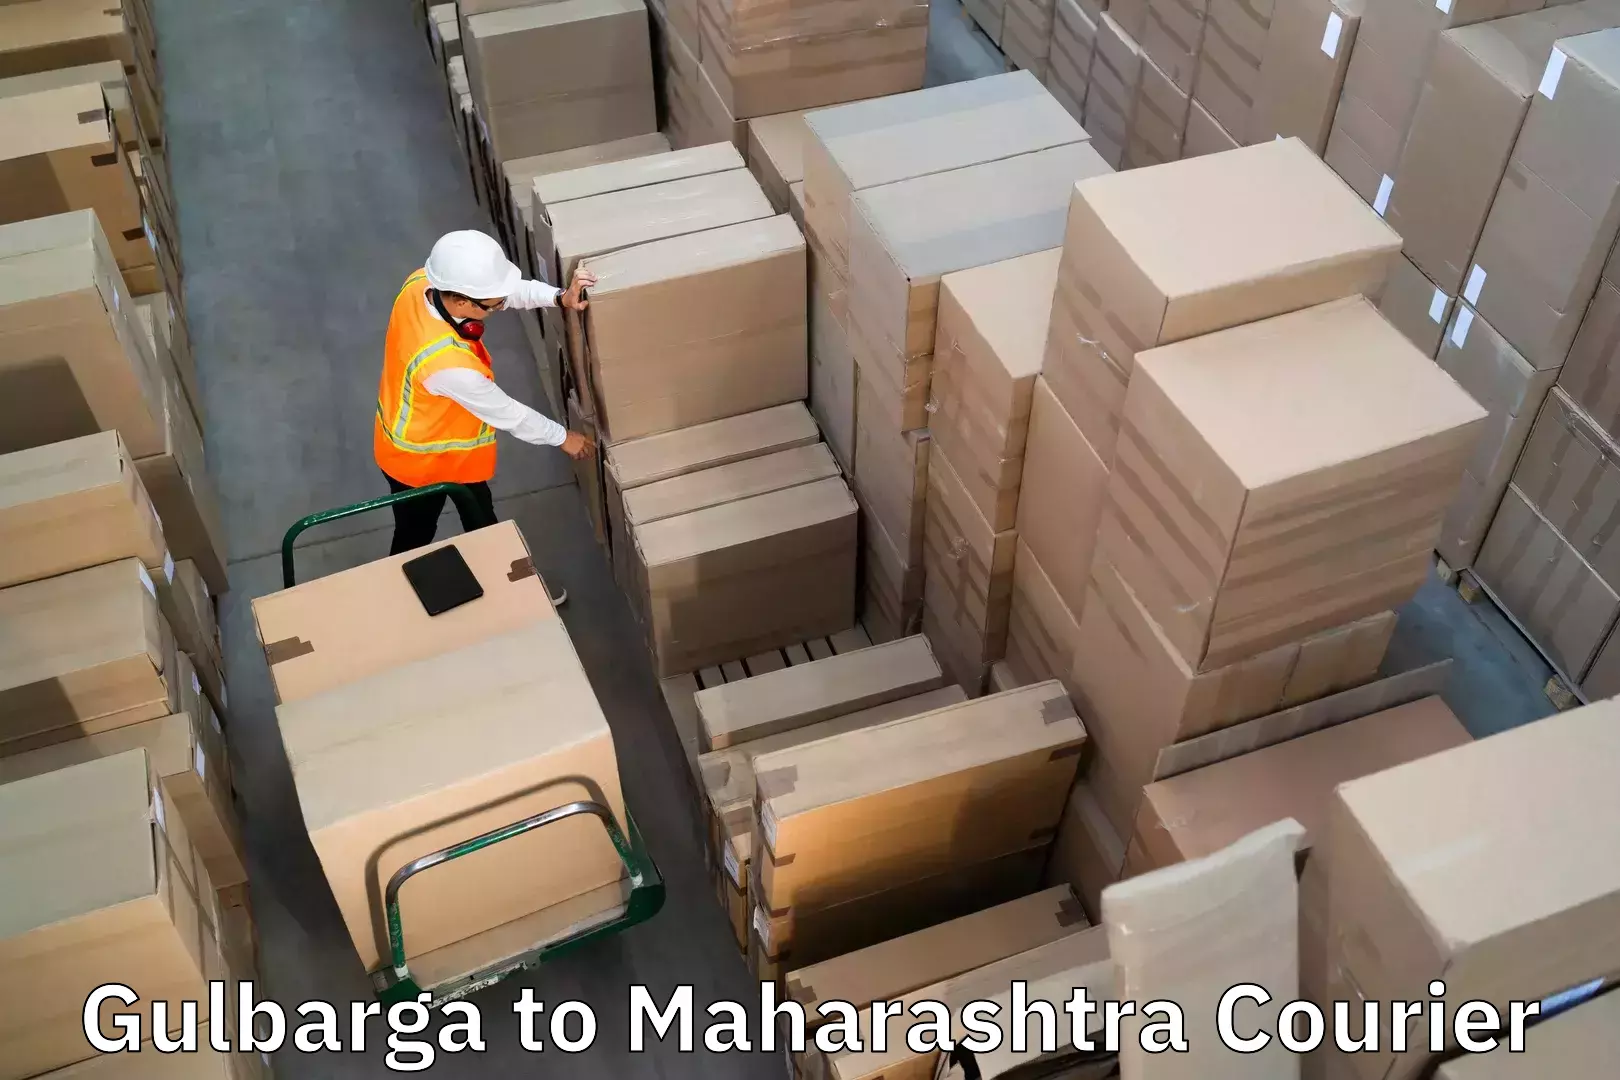 Luggage shipment tracking Gulbarga to Mumbai University